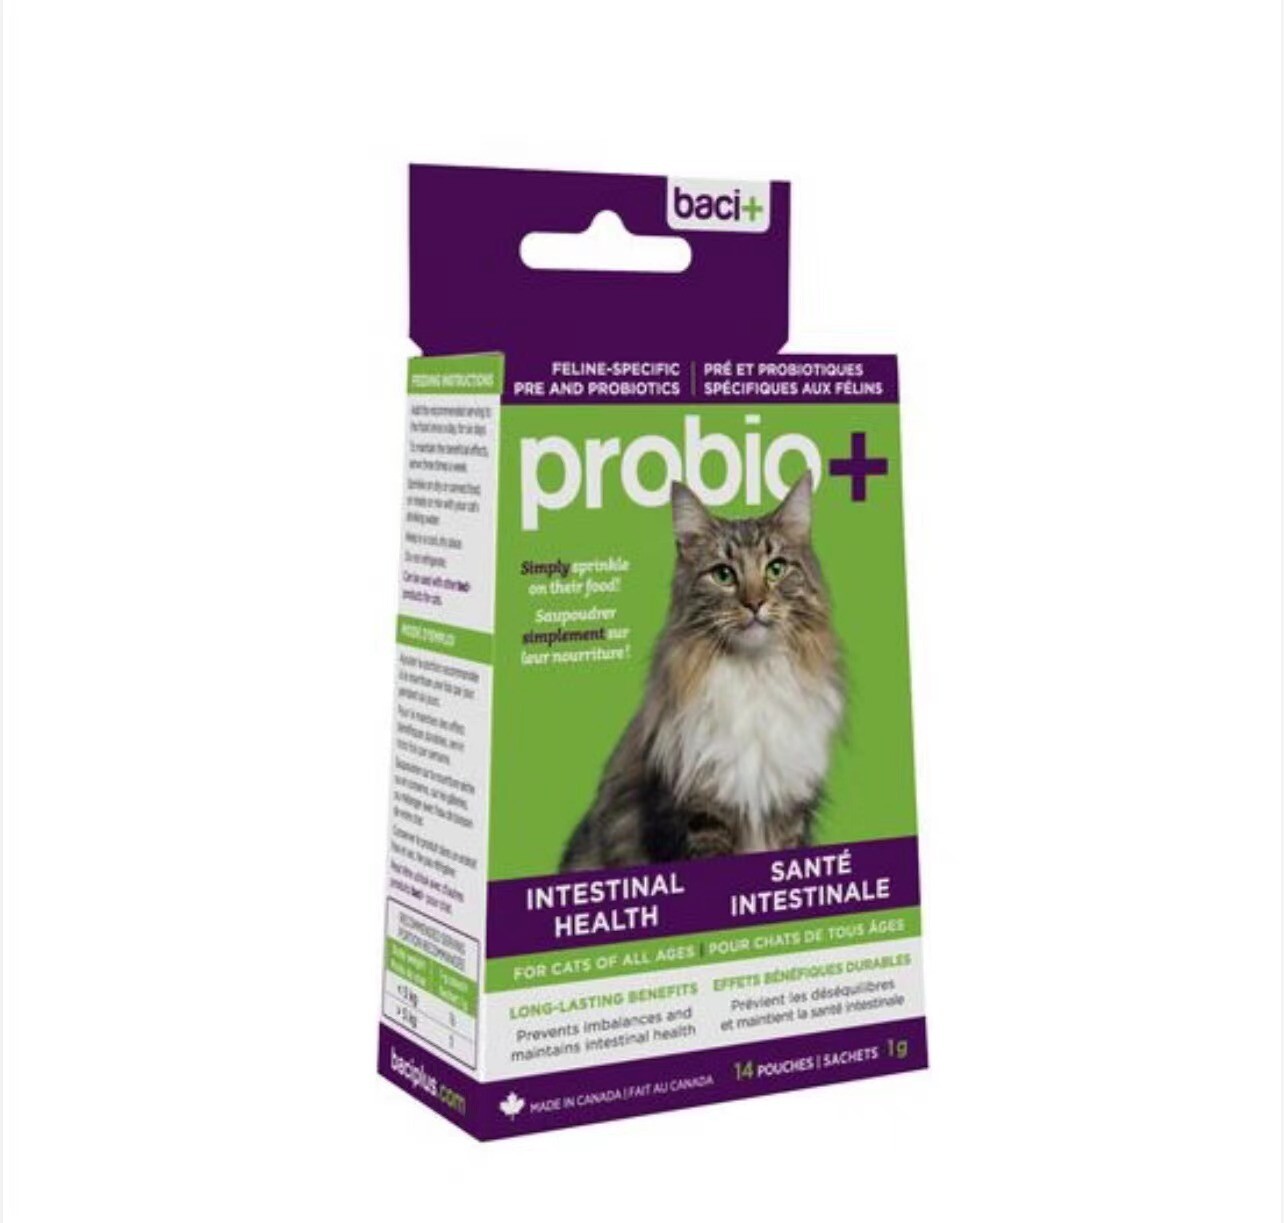 Baci+probio+ PRE AND PROBIOTICS  For CATS - 猫咪肠道健康